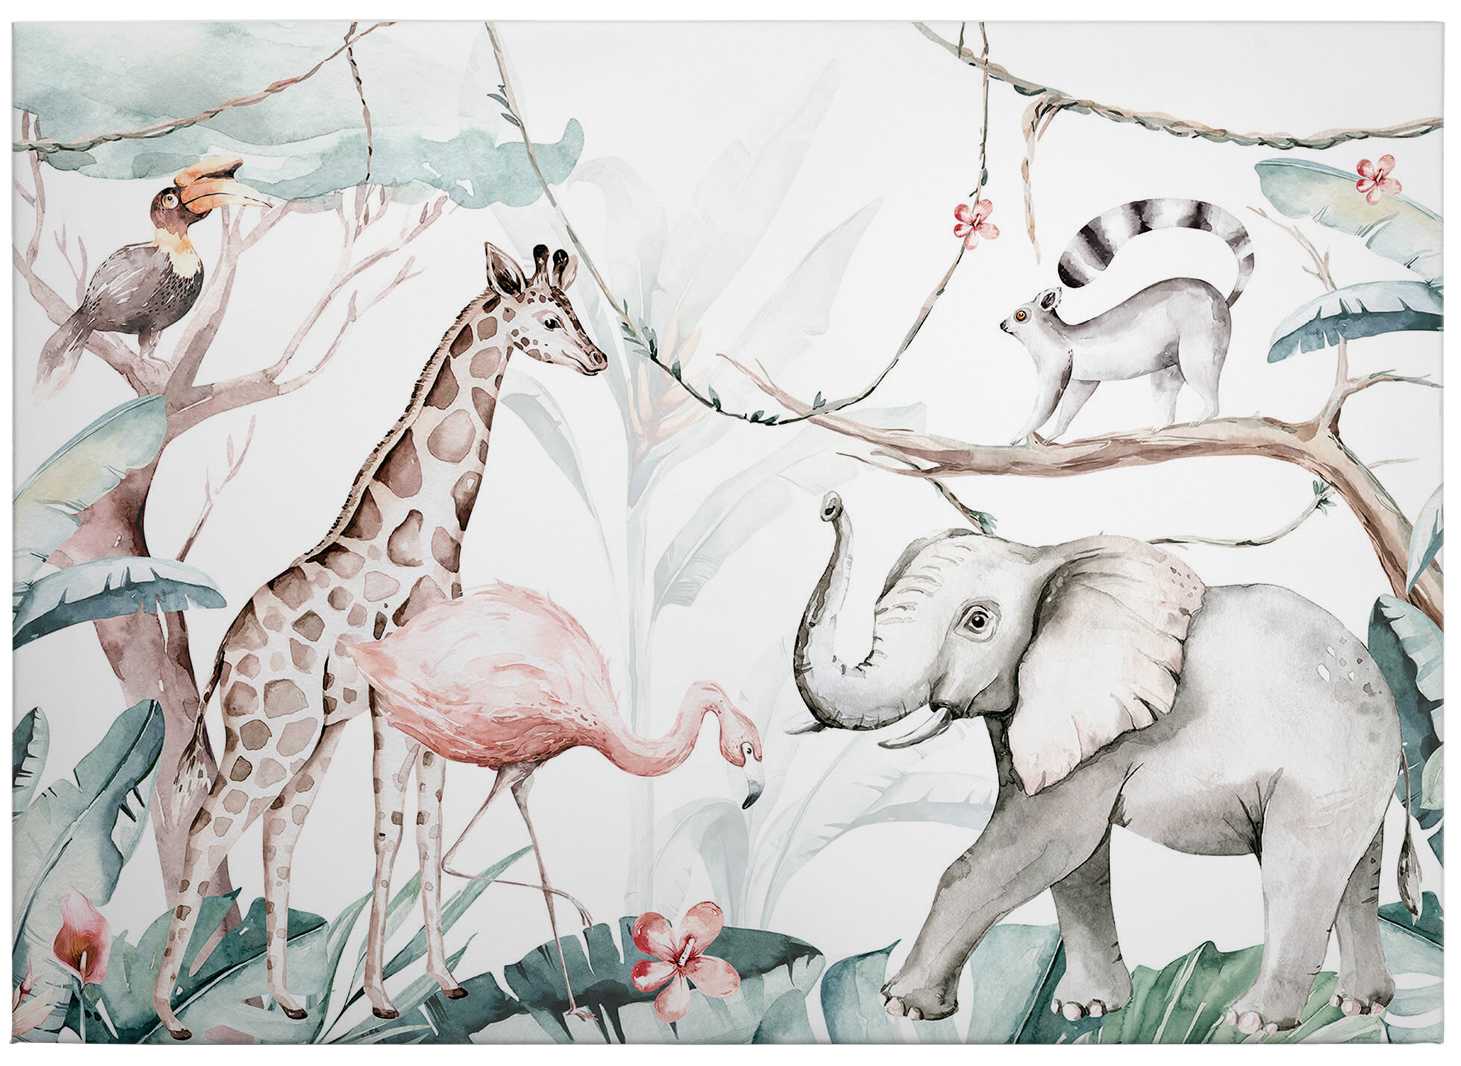             Kids canvas print jungle animals watercolour by Kvilis
        